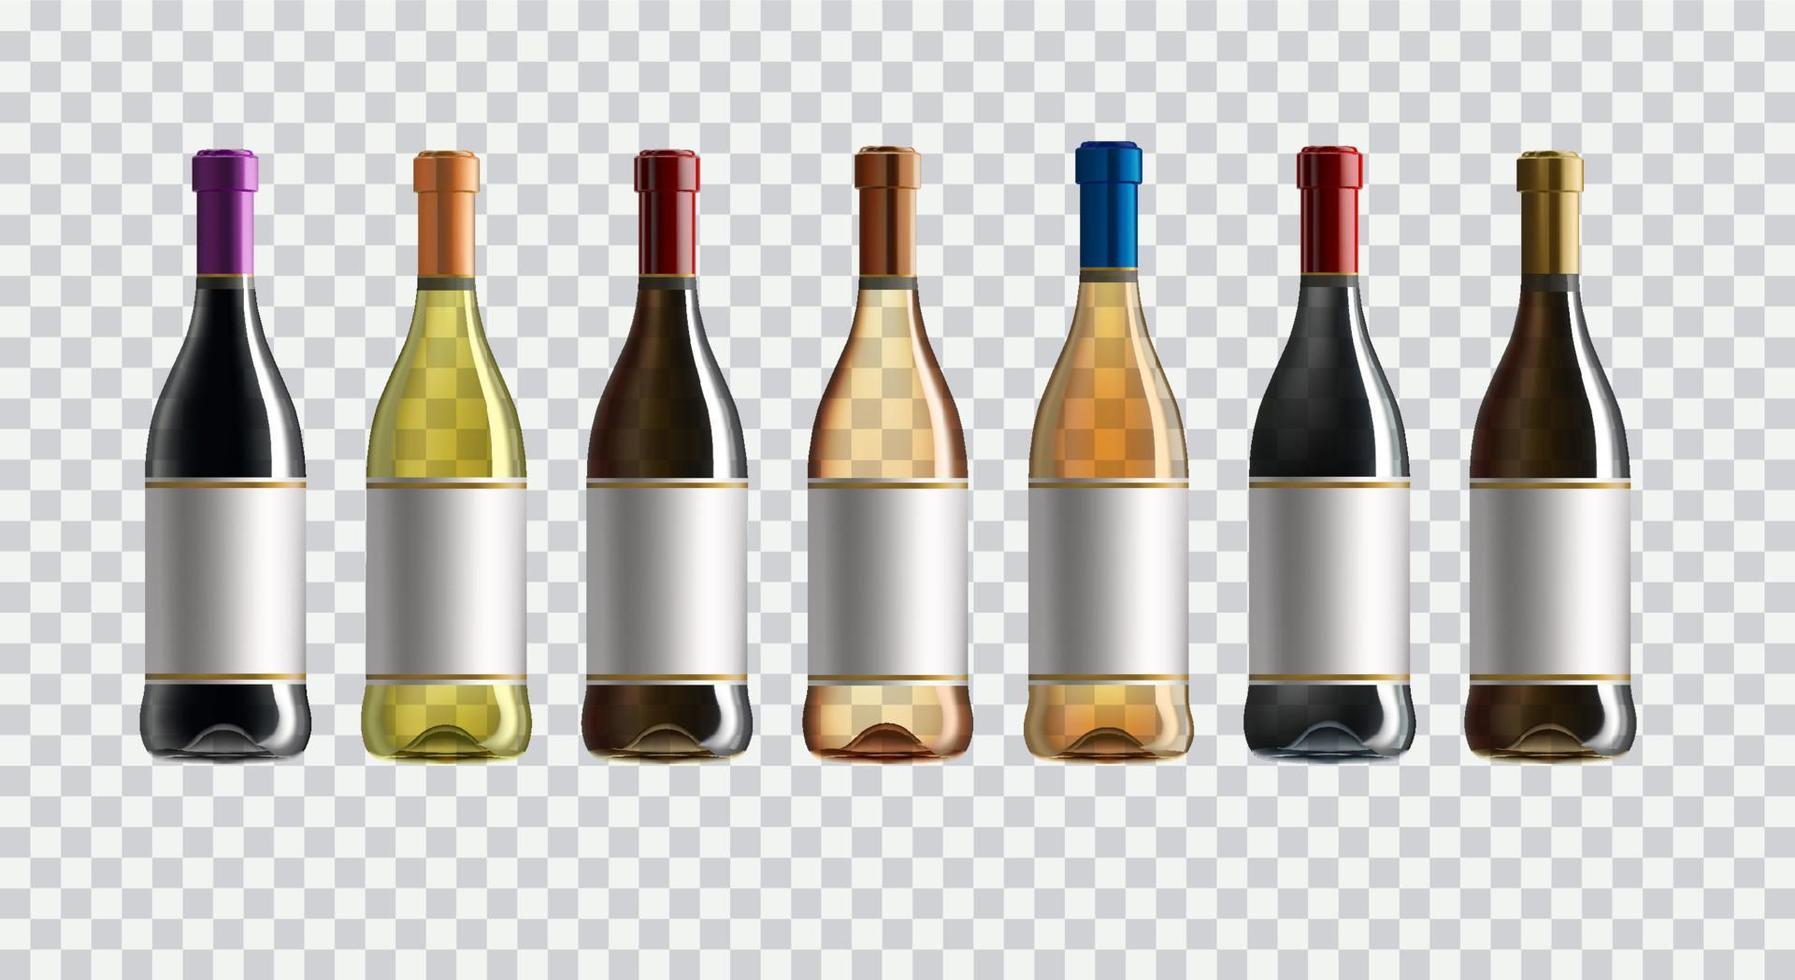 röd vin flaska. uppsättning av vit, reste sig, och röd vin flaskor. isolerat på vit bakgrund. vektor